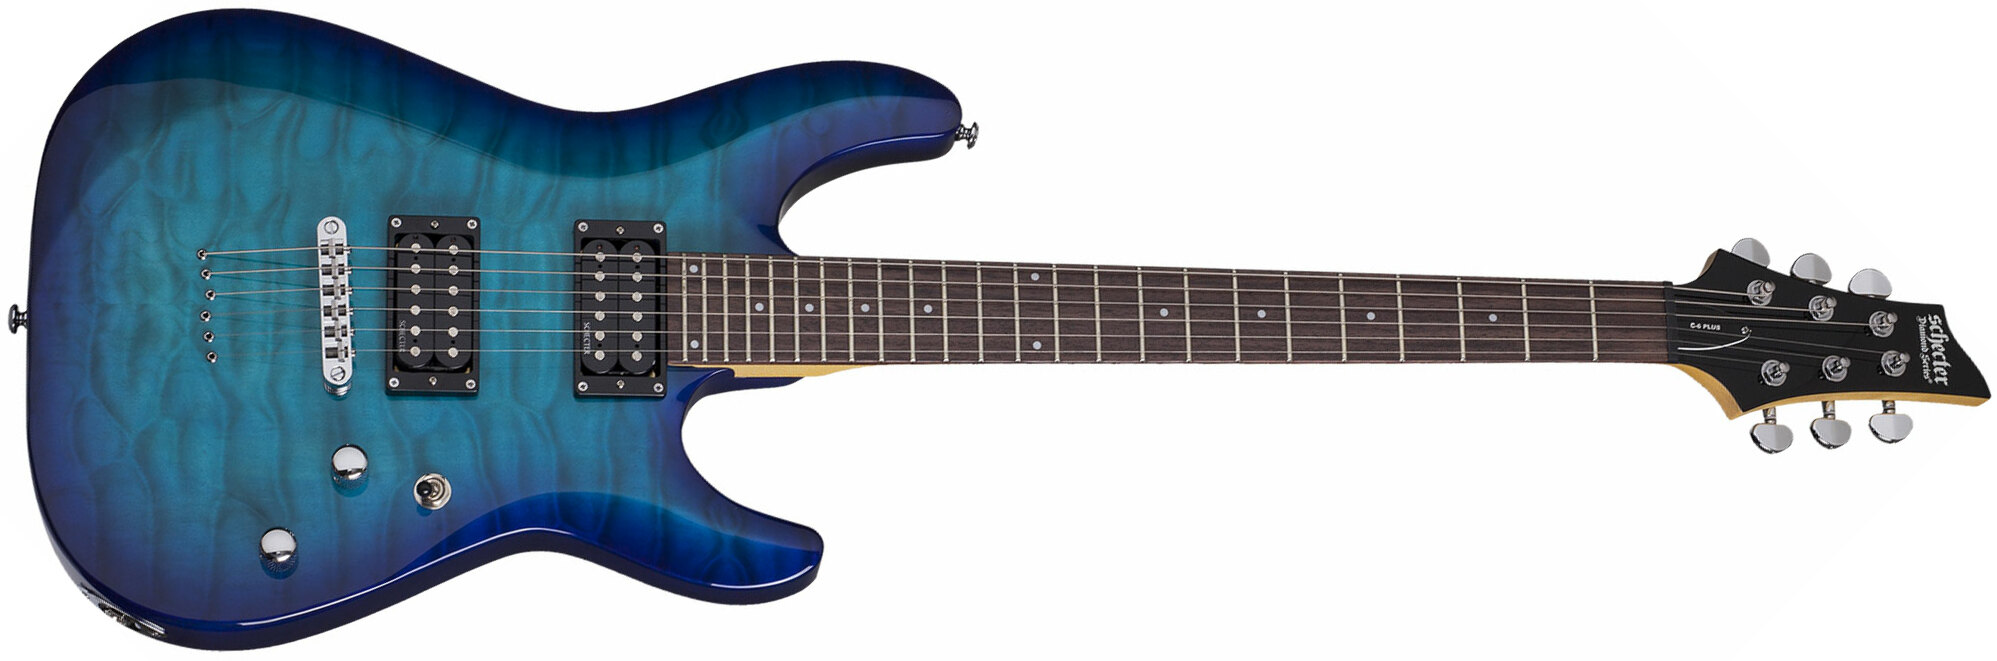 Schecter C-6 Plus 2h Ht Rw - Ocean Blue Burst - Guitarra eléctrica de doble corte - Main picture